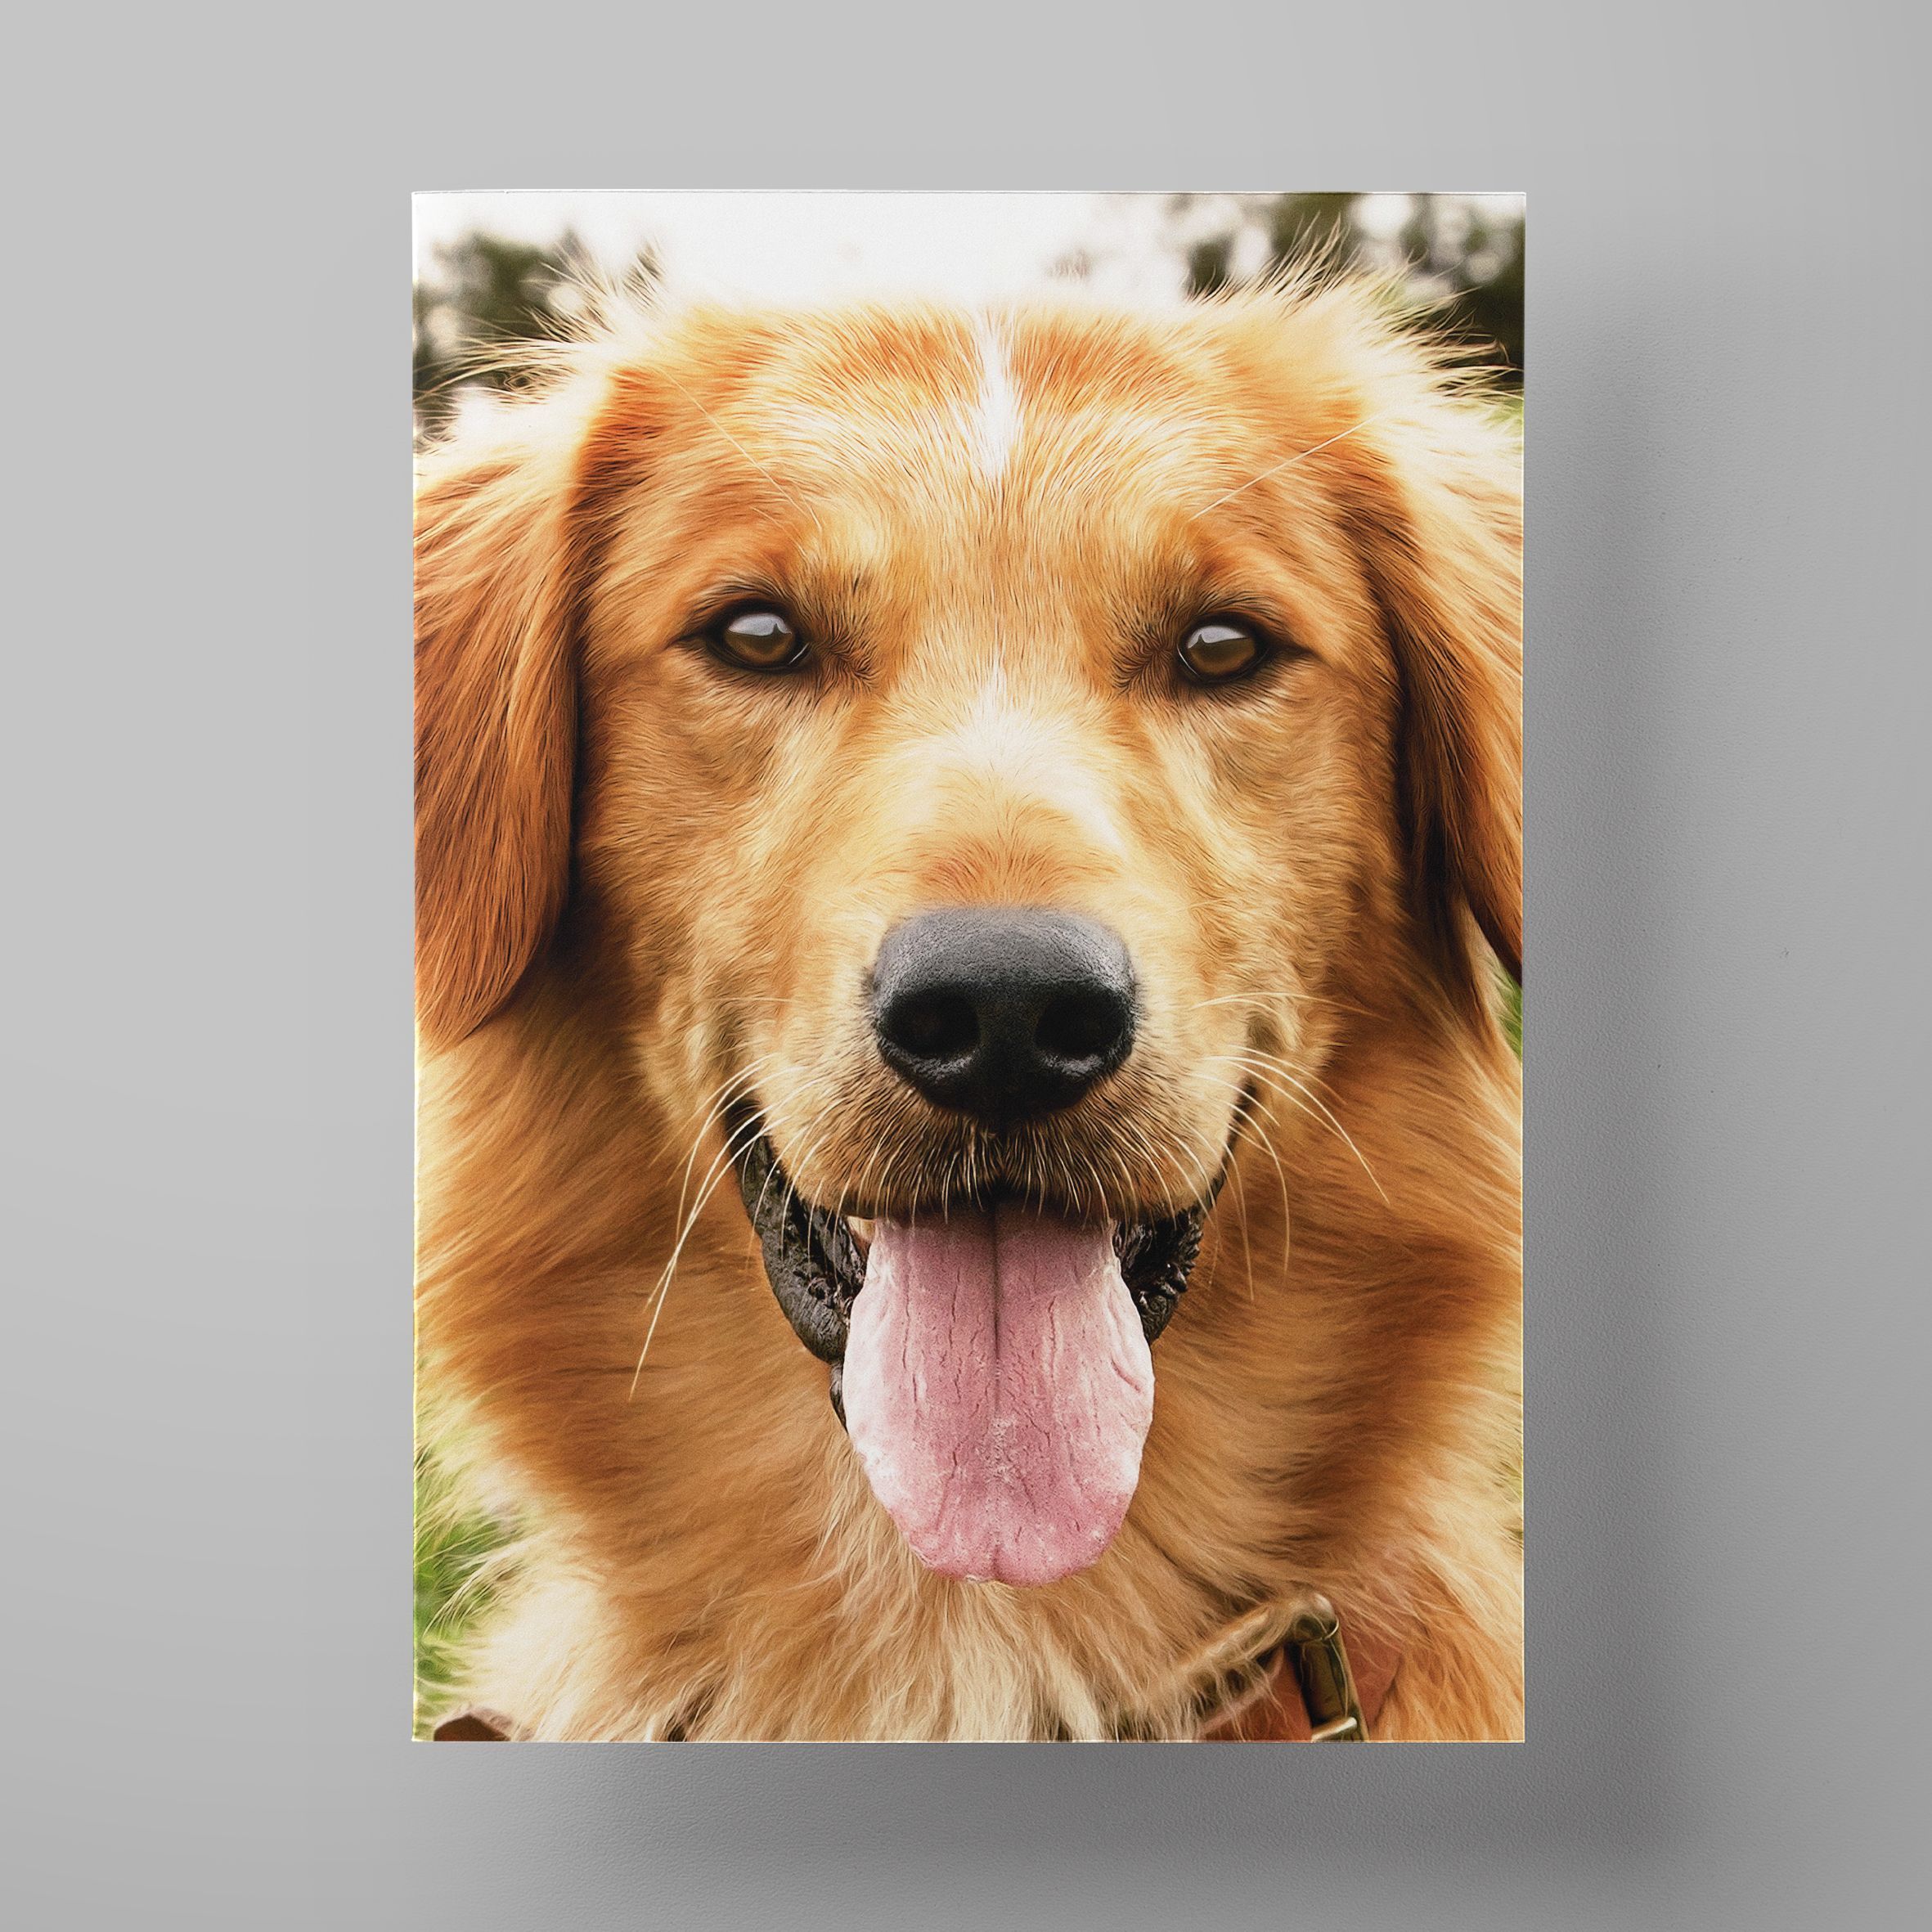 Постер собаки. Постеры с собаками. Красивые постеры с собаками. Собачья жизнь Постер. Импостер собака.